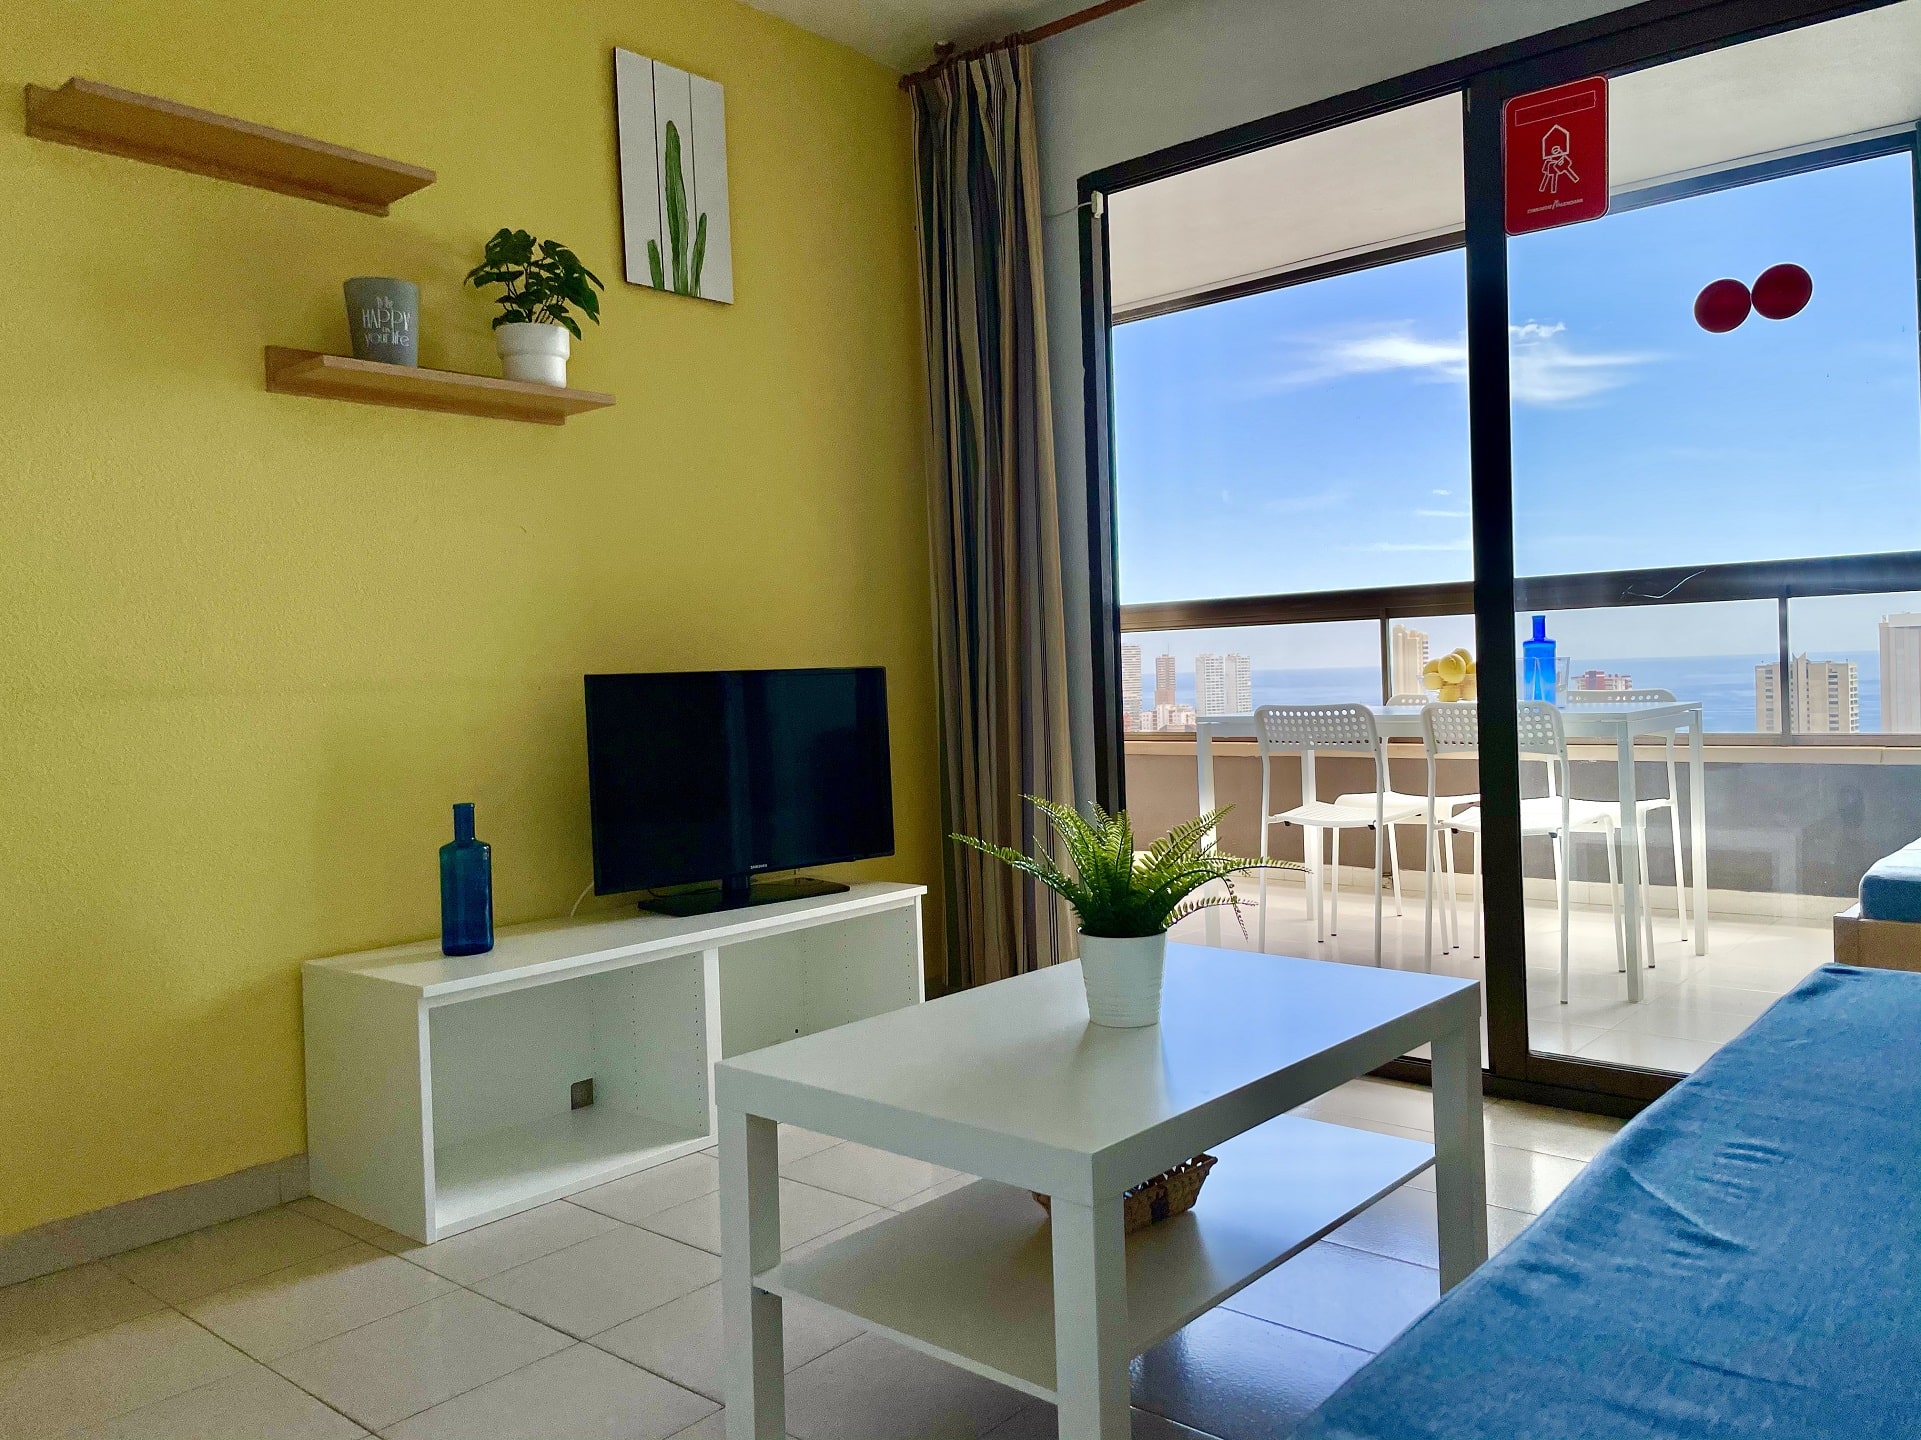 salon-con-vistas-living-room-with-views-min